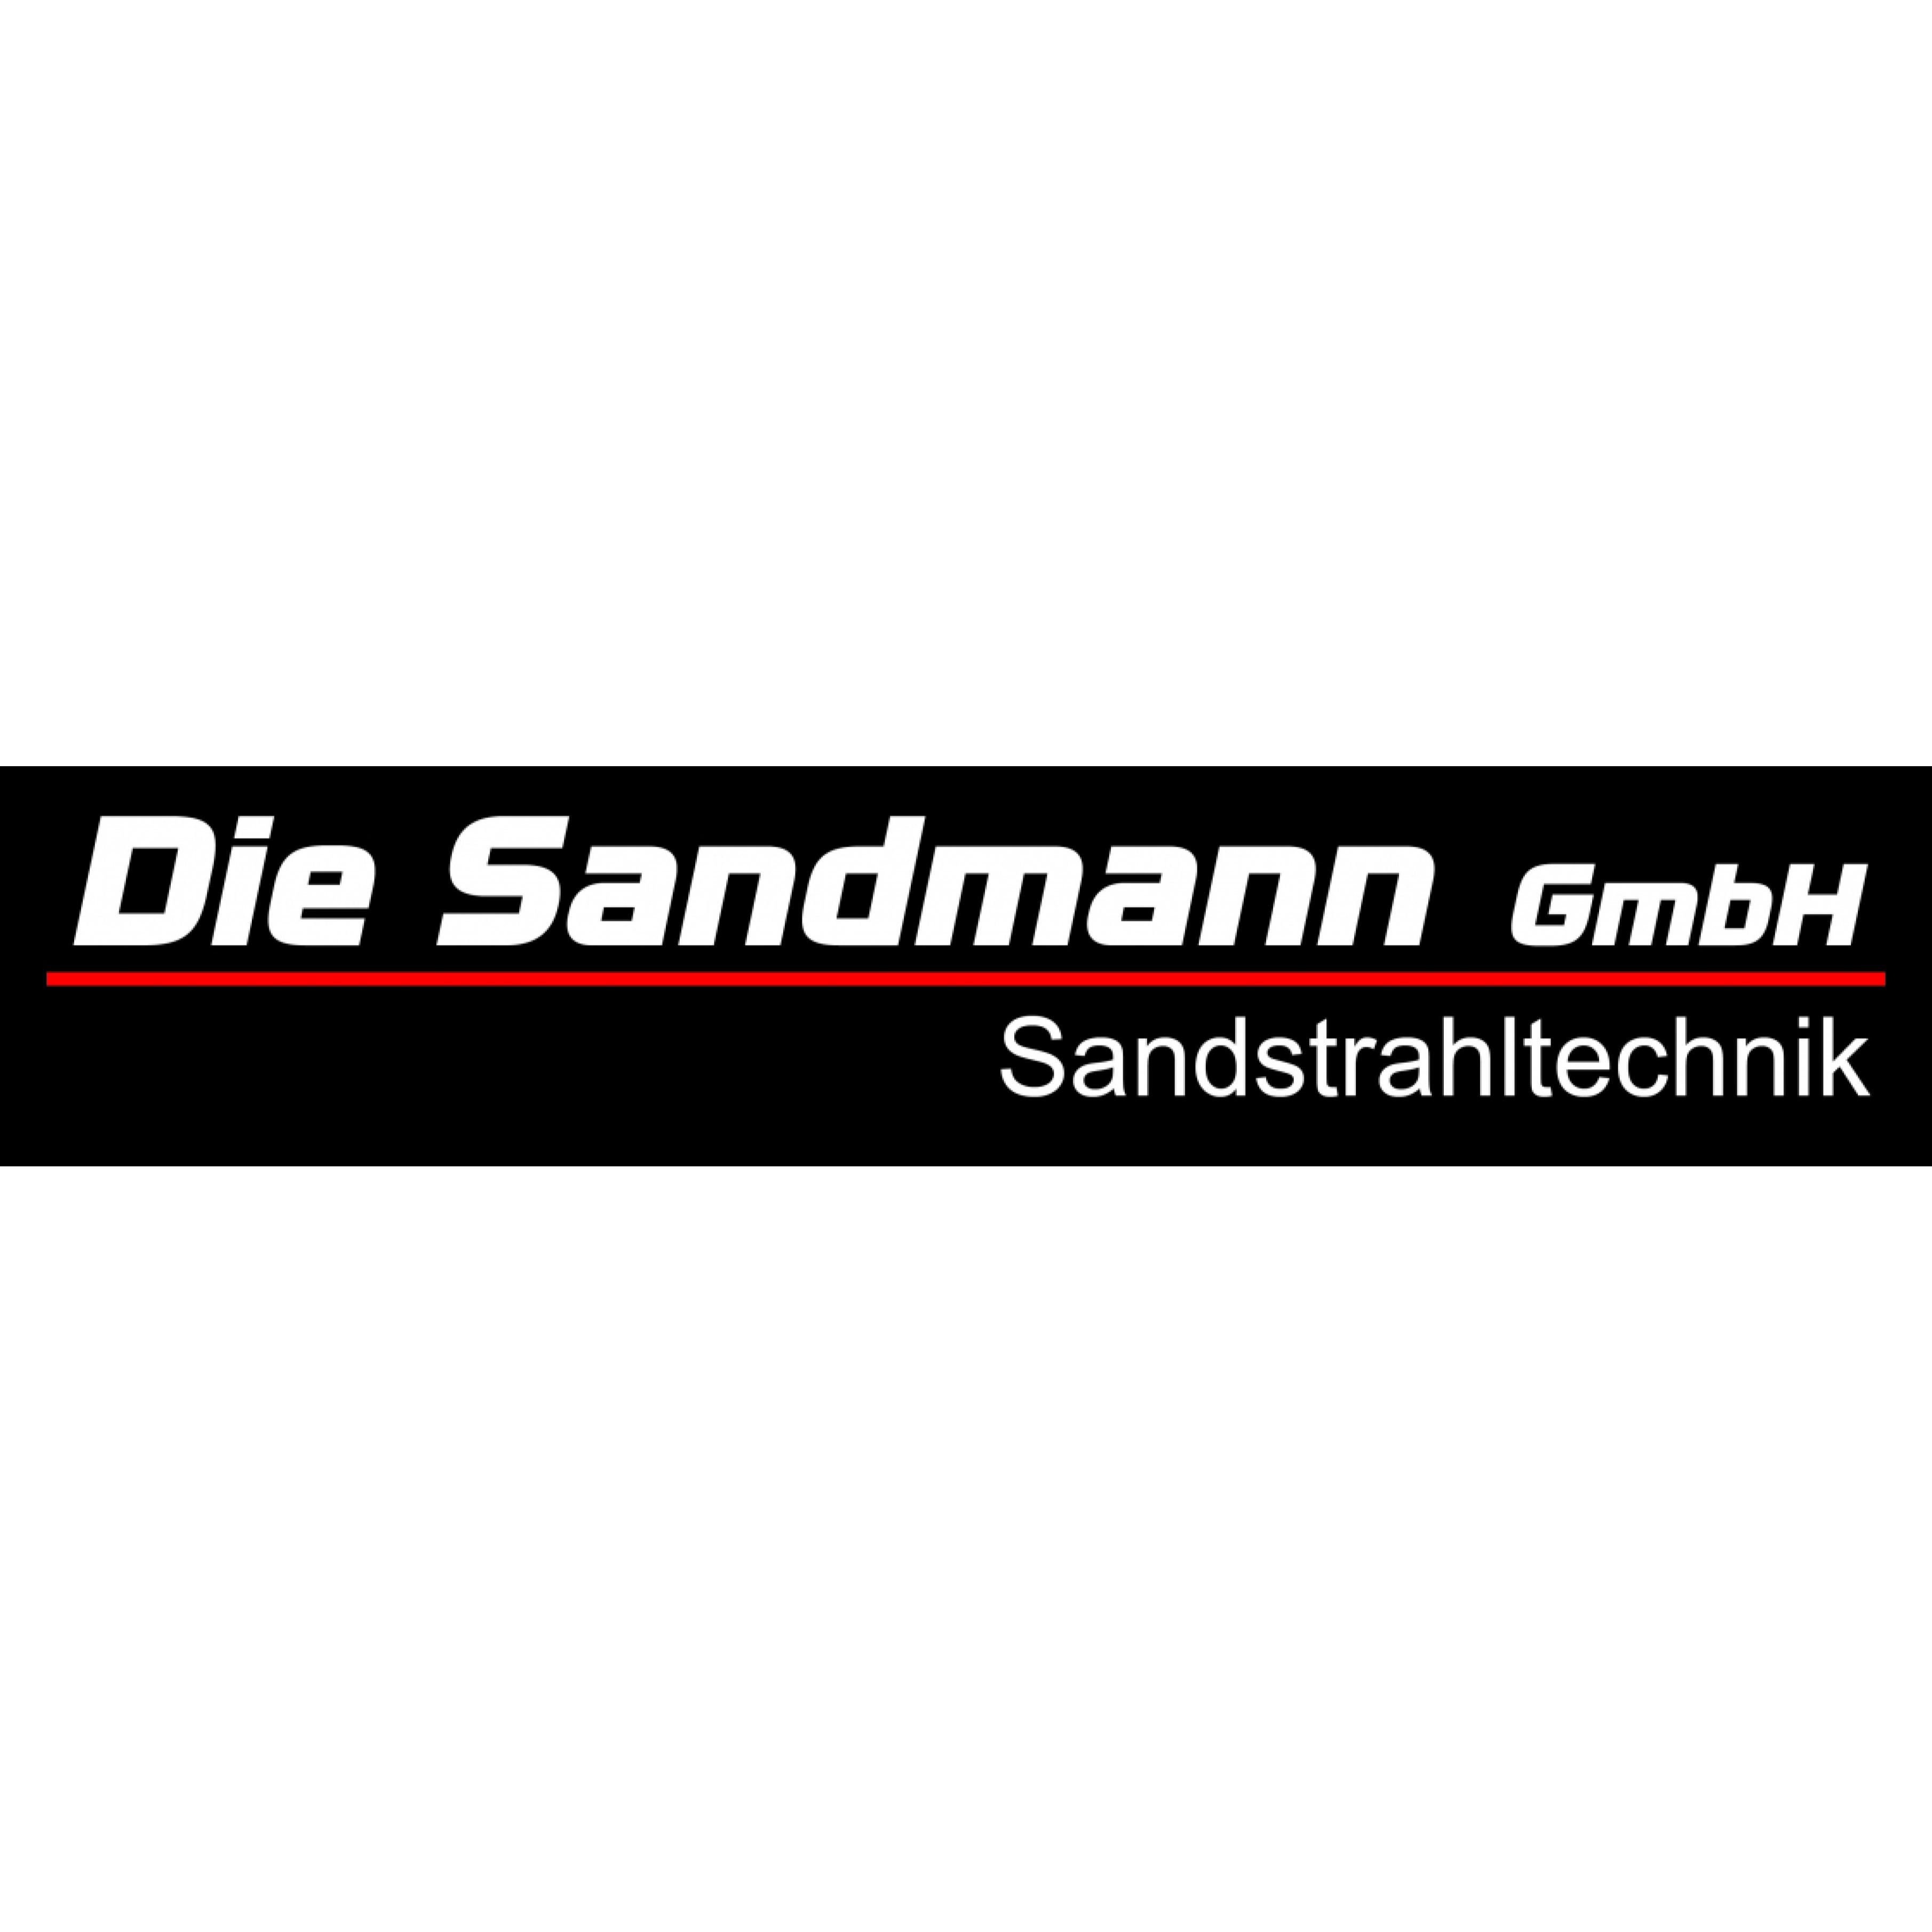 Die Sandmann GmbH